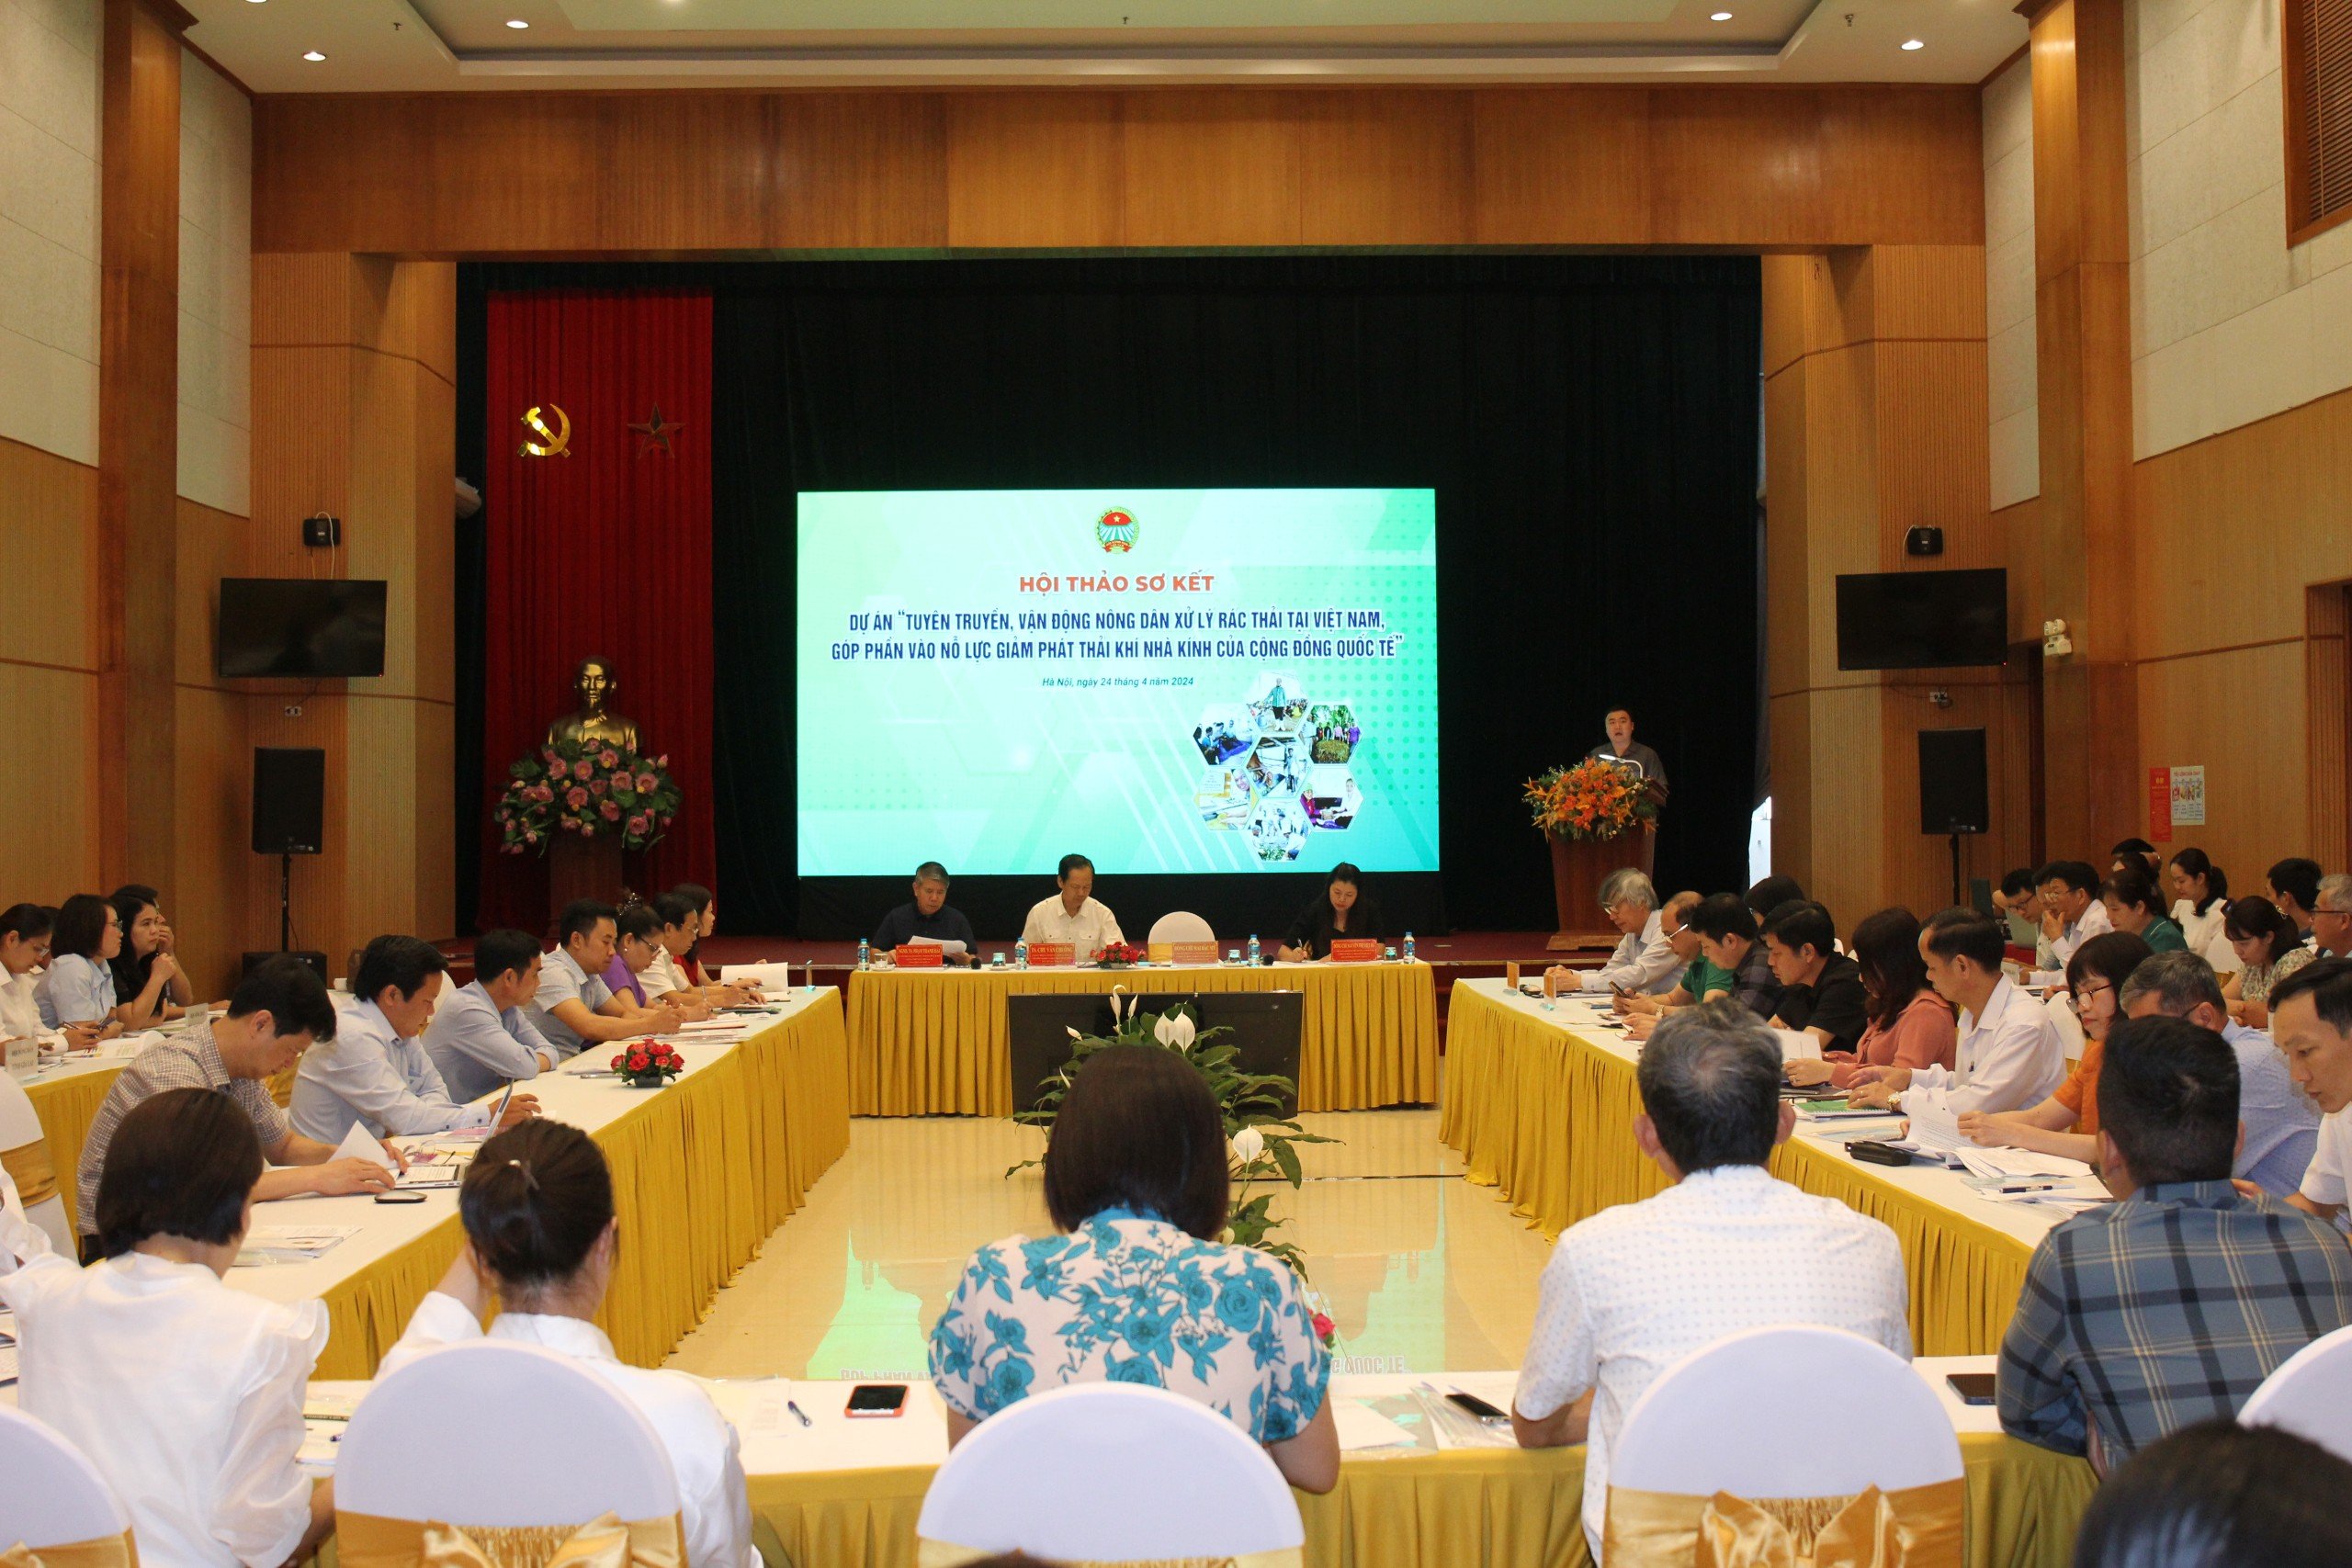 Hội NDVN sơ kết Dự án tuyên truyền, vận động nông dân xử lý rác thải tại Việt Nam: Hơn 8.000 mô hình hiệu quả- Ảnh 1.